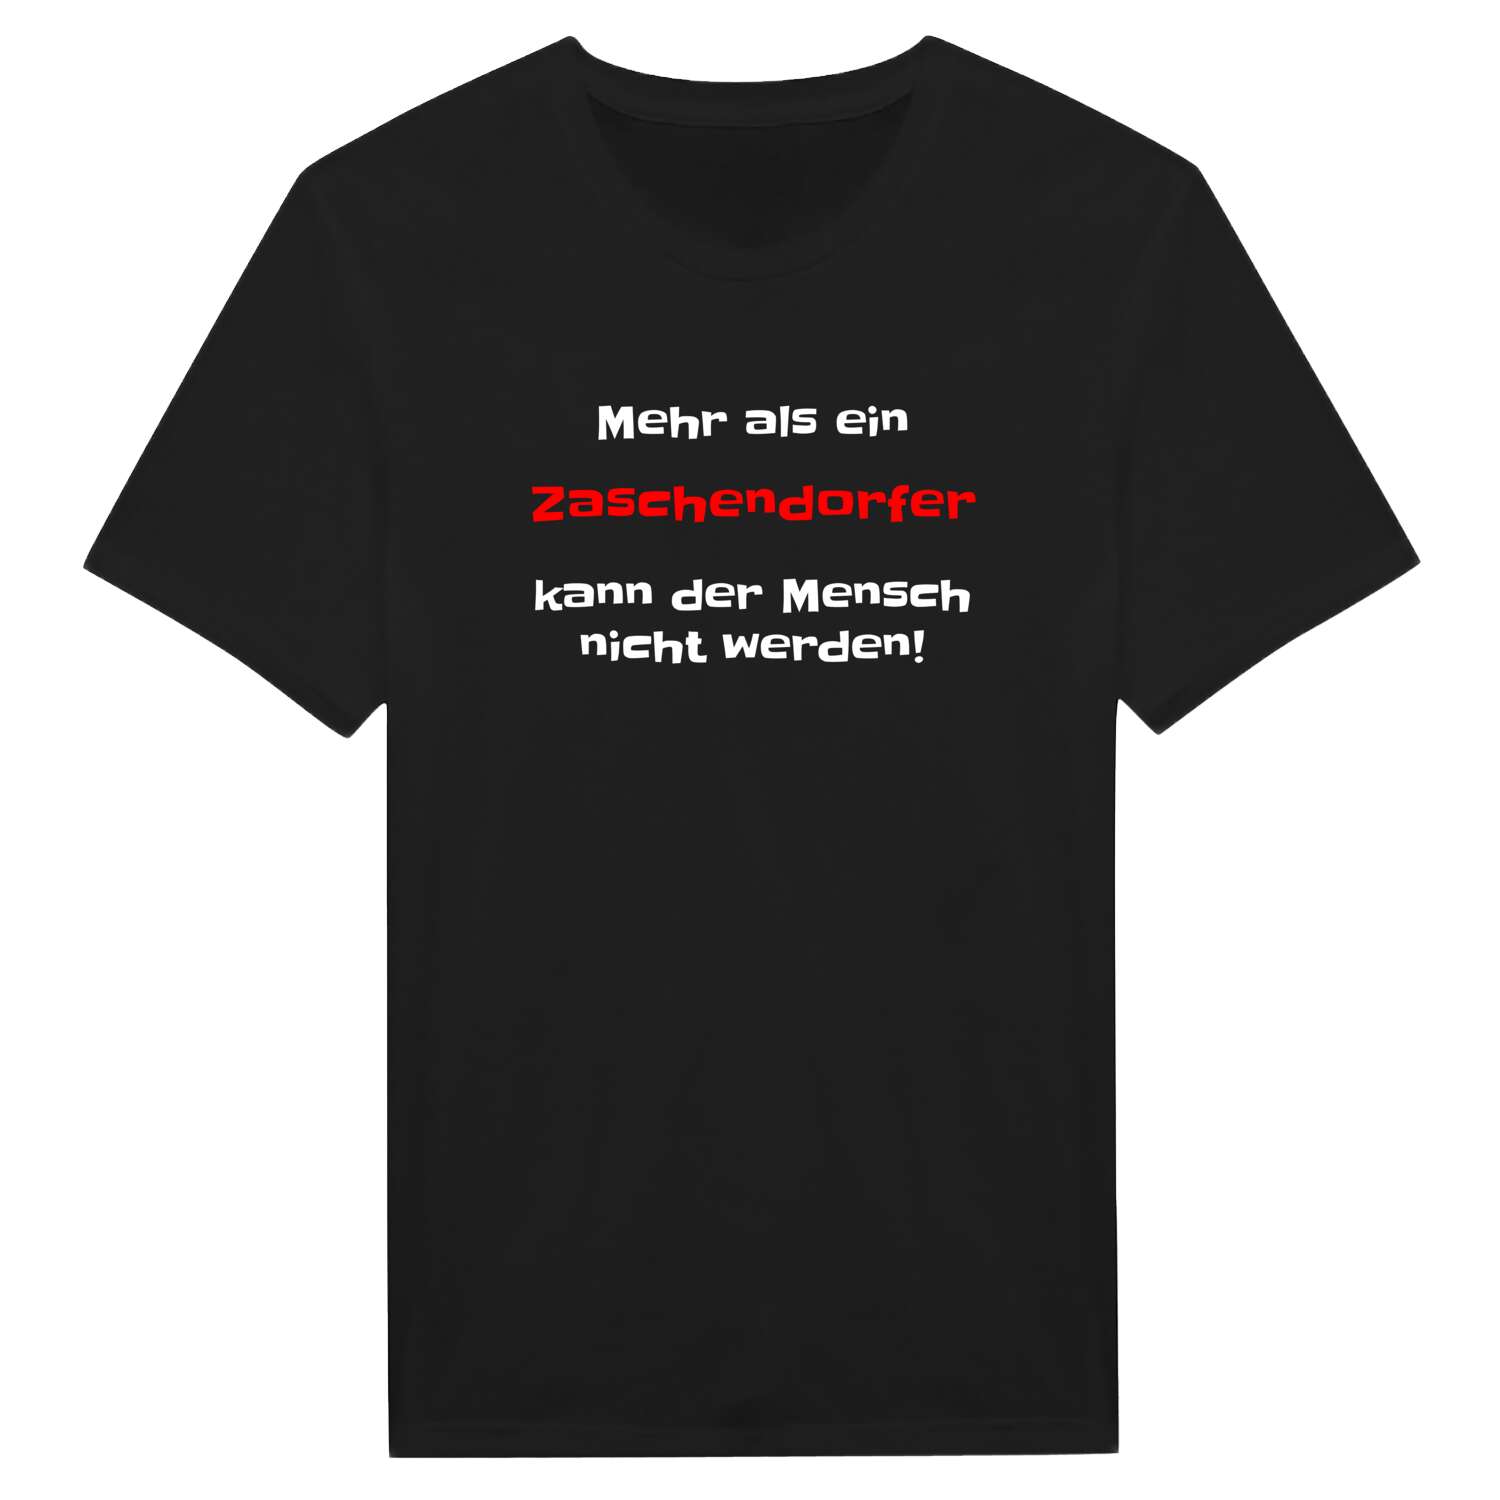 Zaschendorf T-Shirt »Mehr als ein«